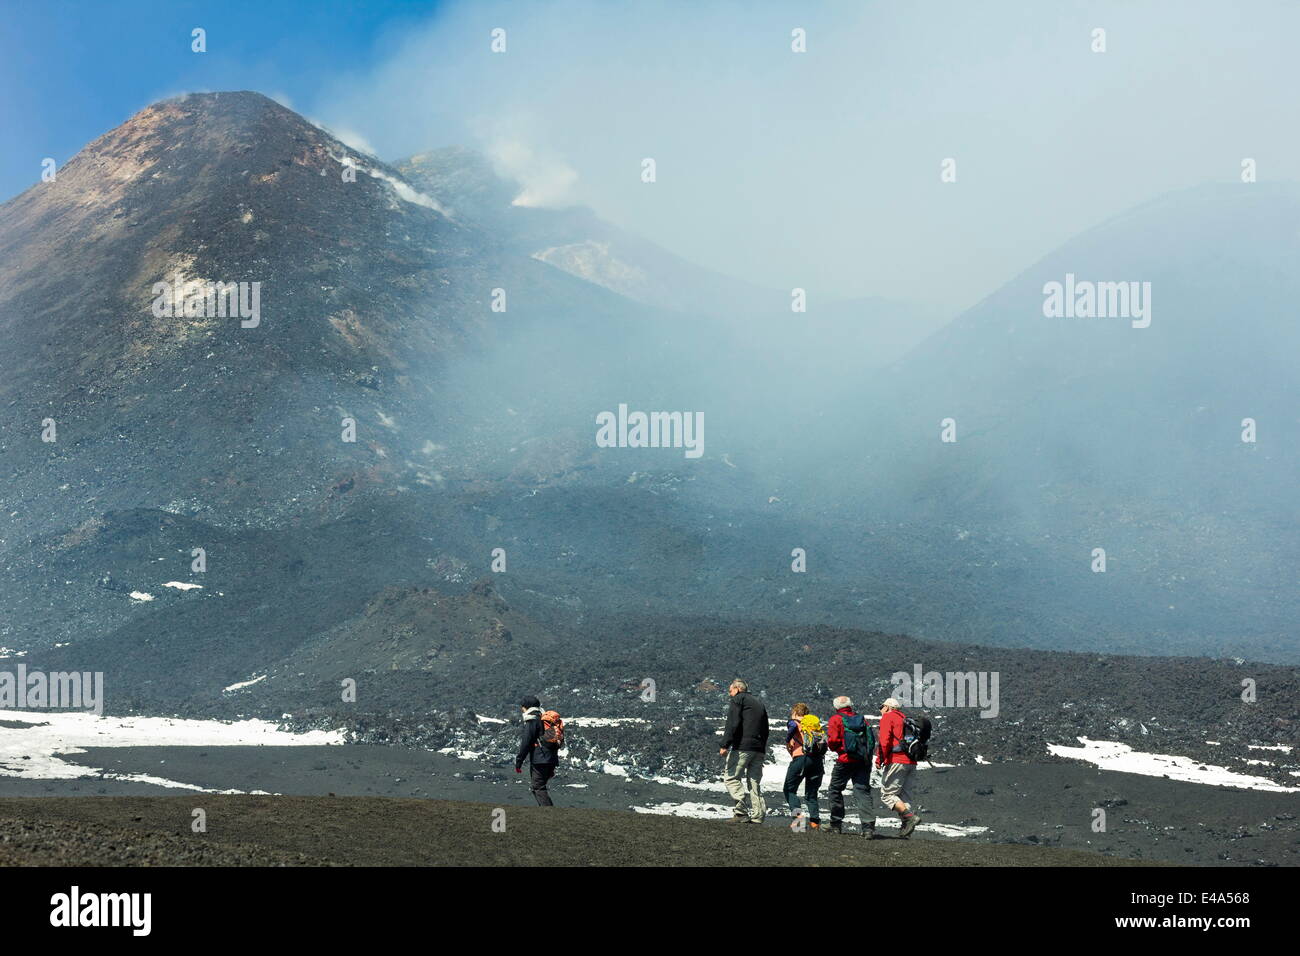 Gli escursionisti dalla cabinovia vicino al vertice di fumo del Vulcano Etna durante una fase attiva, l'Etna, UNESCO, Sicilia, Italia Foto Stock